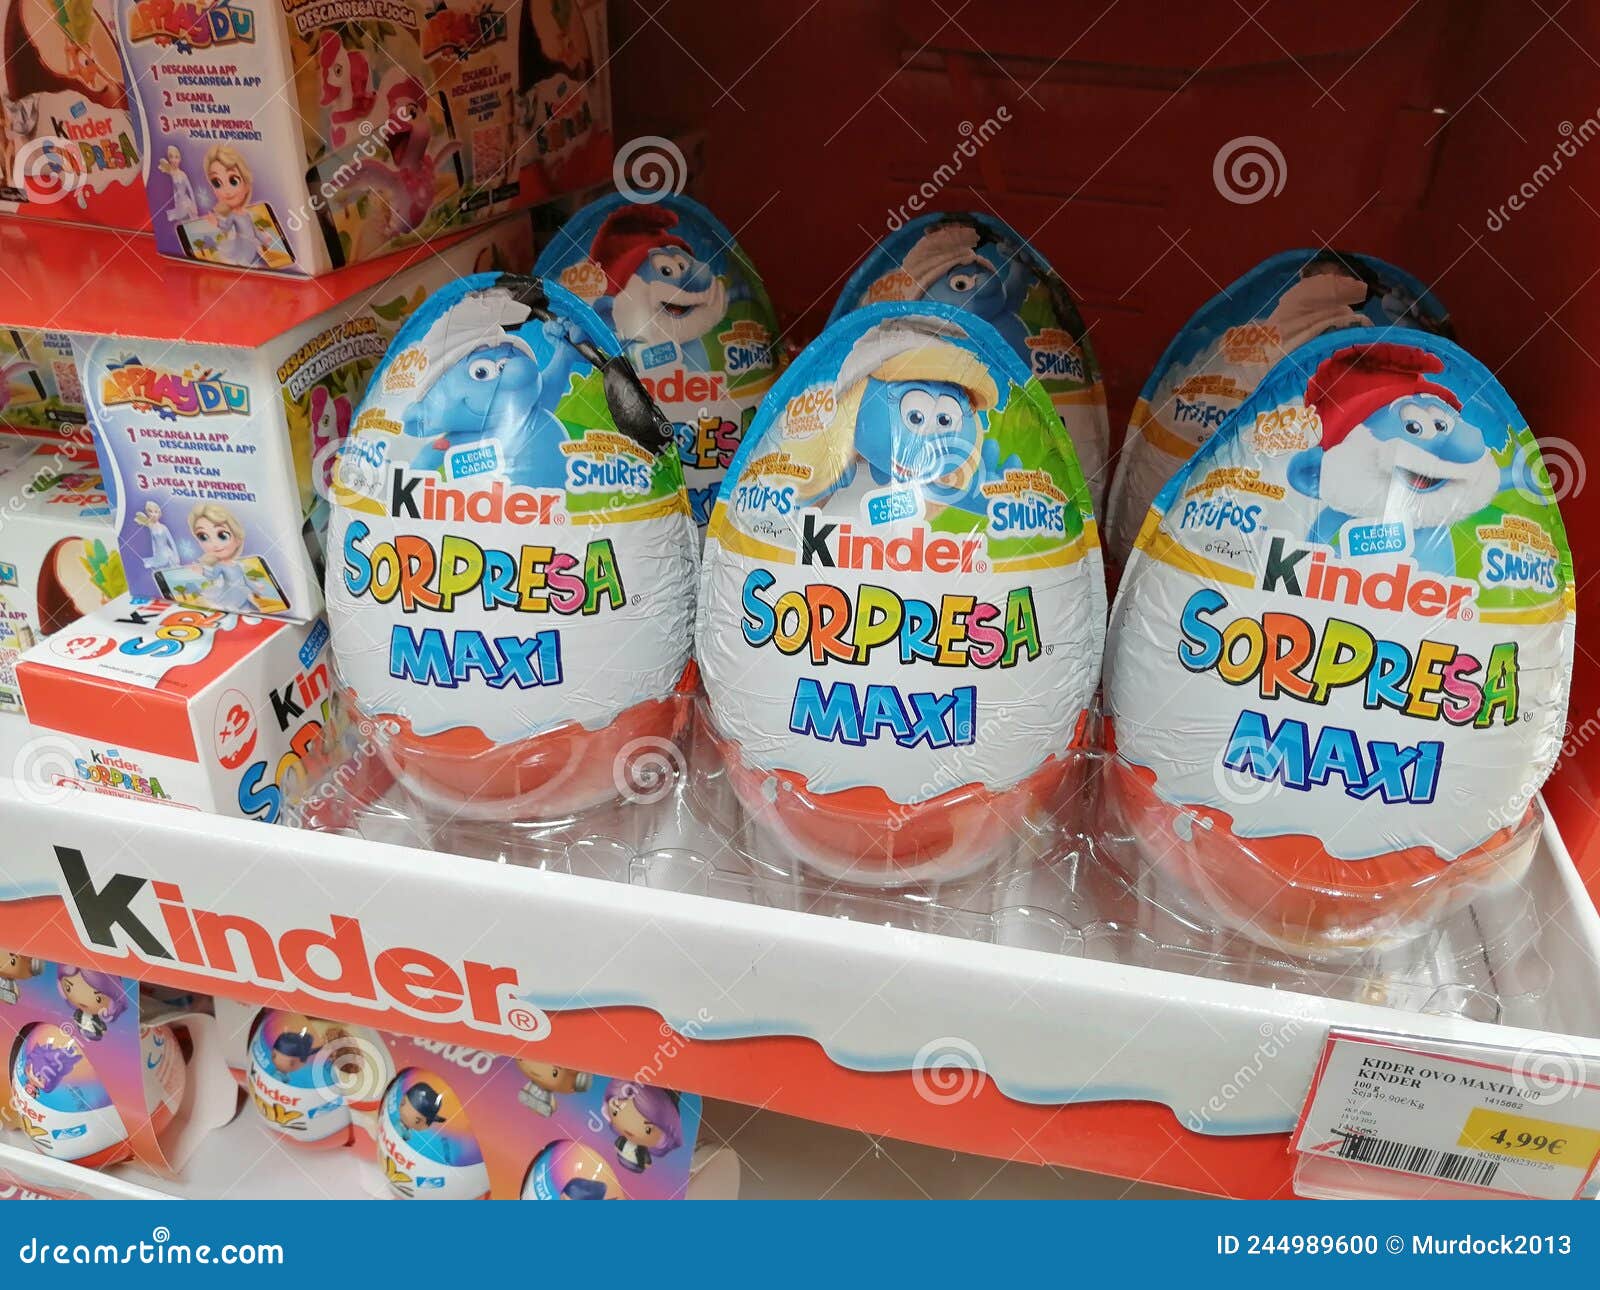 Oeufs de Pâques façon Kinder Surprise - Recette par Le Pays des